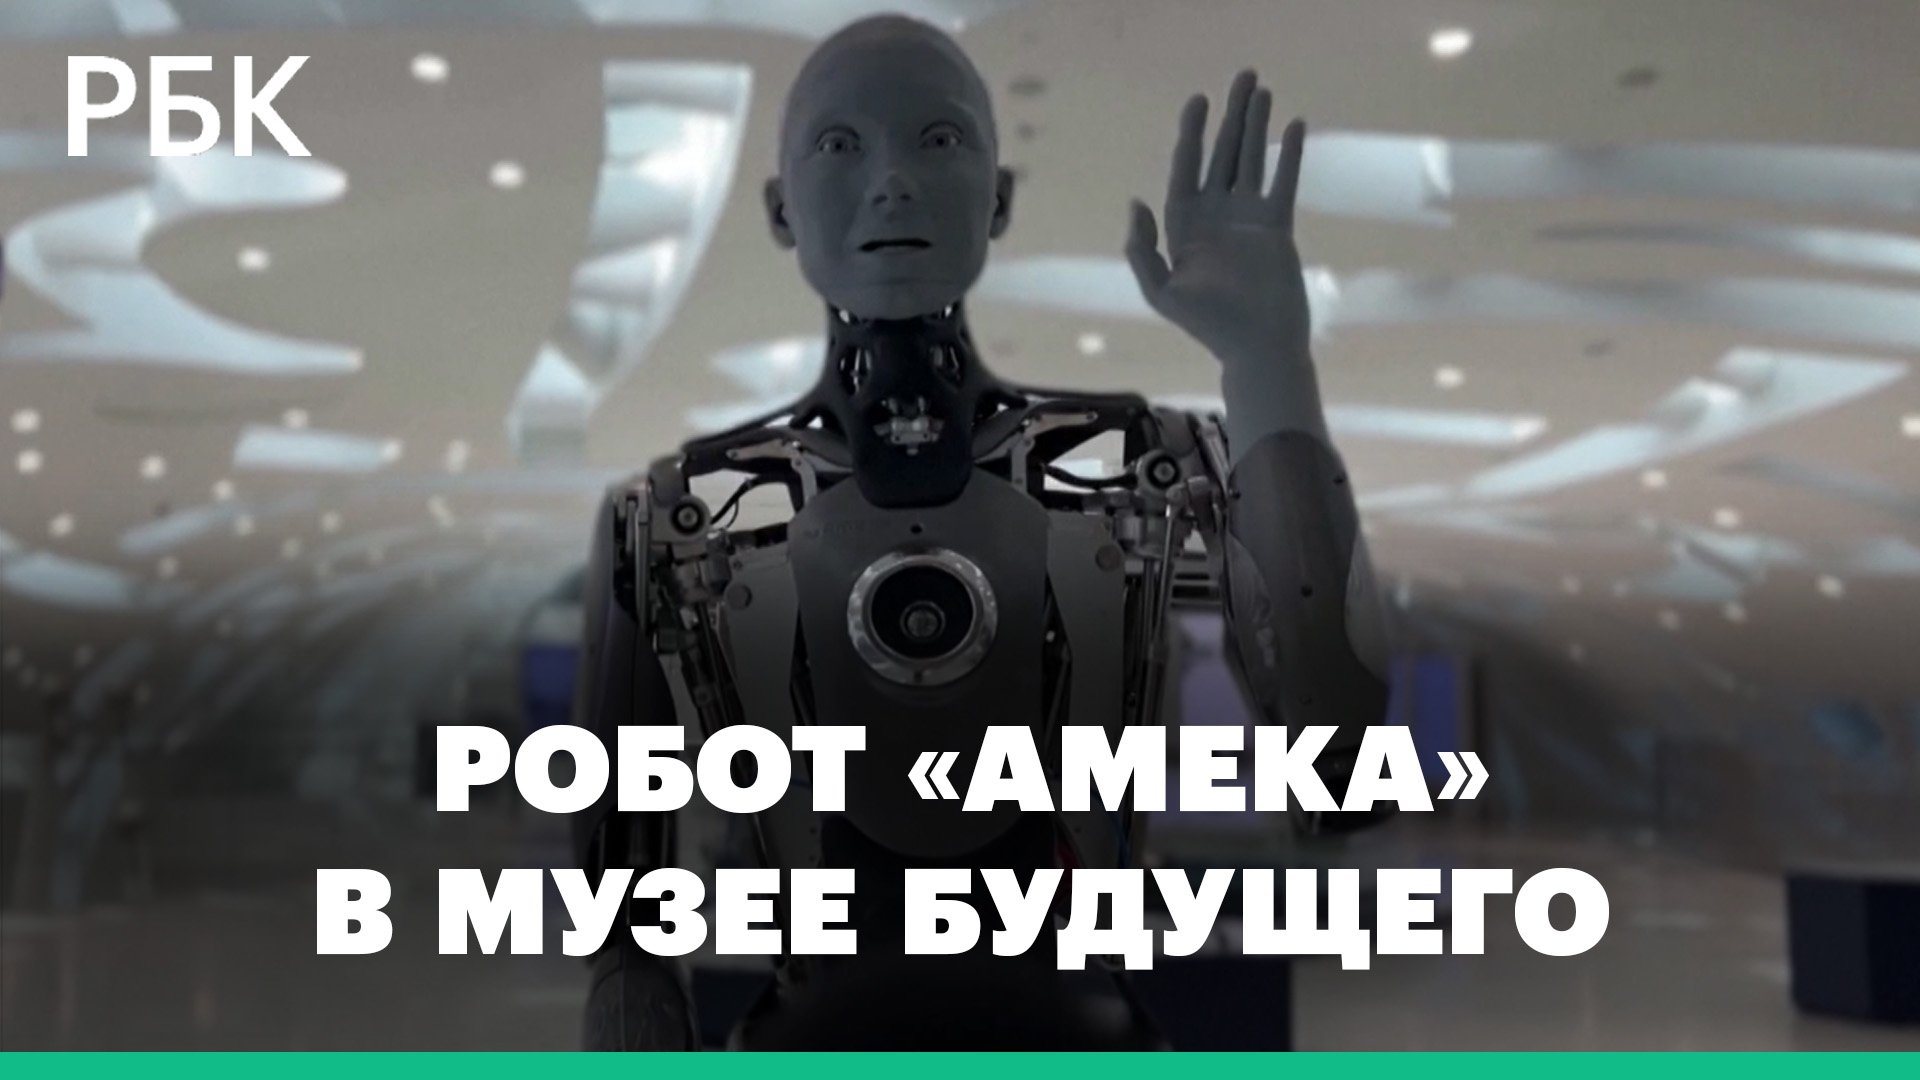 Самый «эмоциональный» робот «Амека» работает экскурсоводом в дубайском музее. Видео